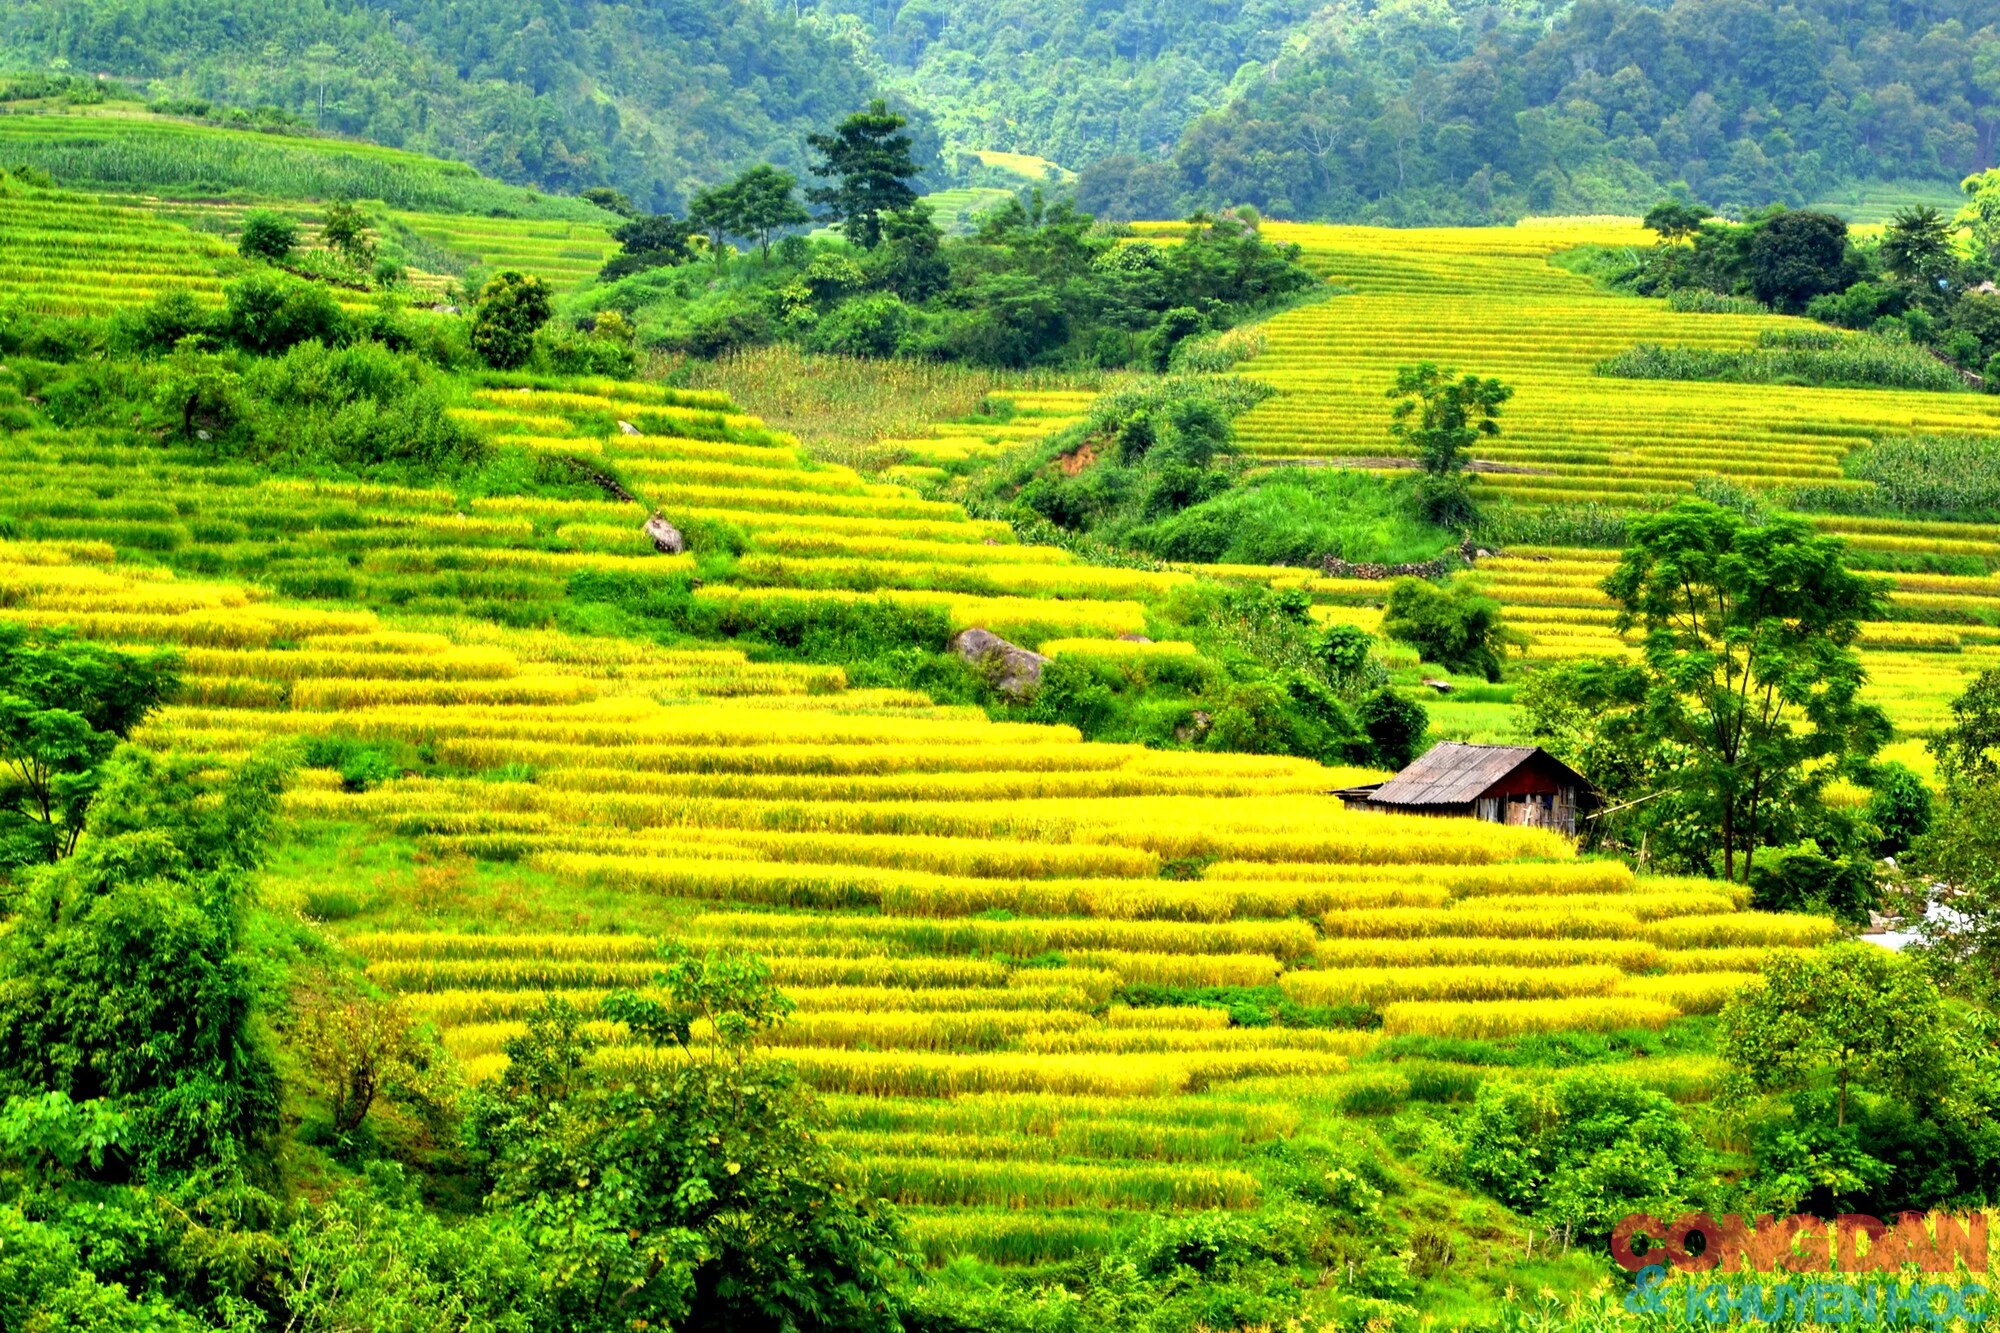 Mùa vàng đẹp mê trên núi cao Bát Xát, Lào Cai ảnh 4